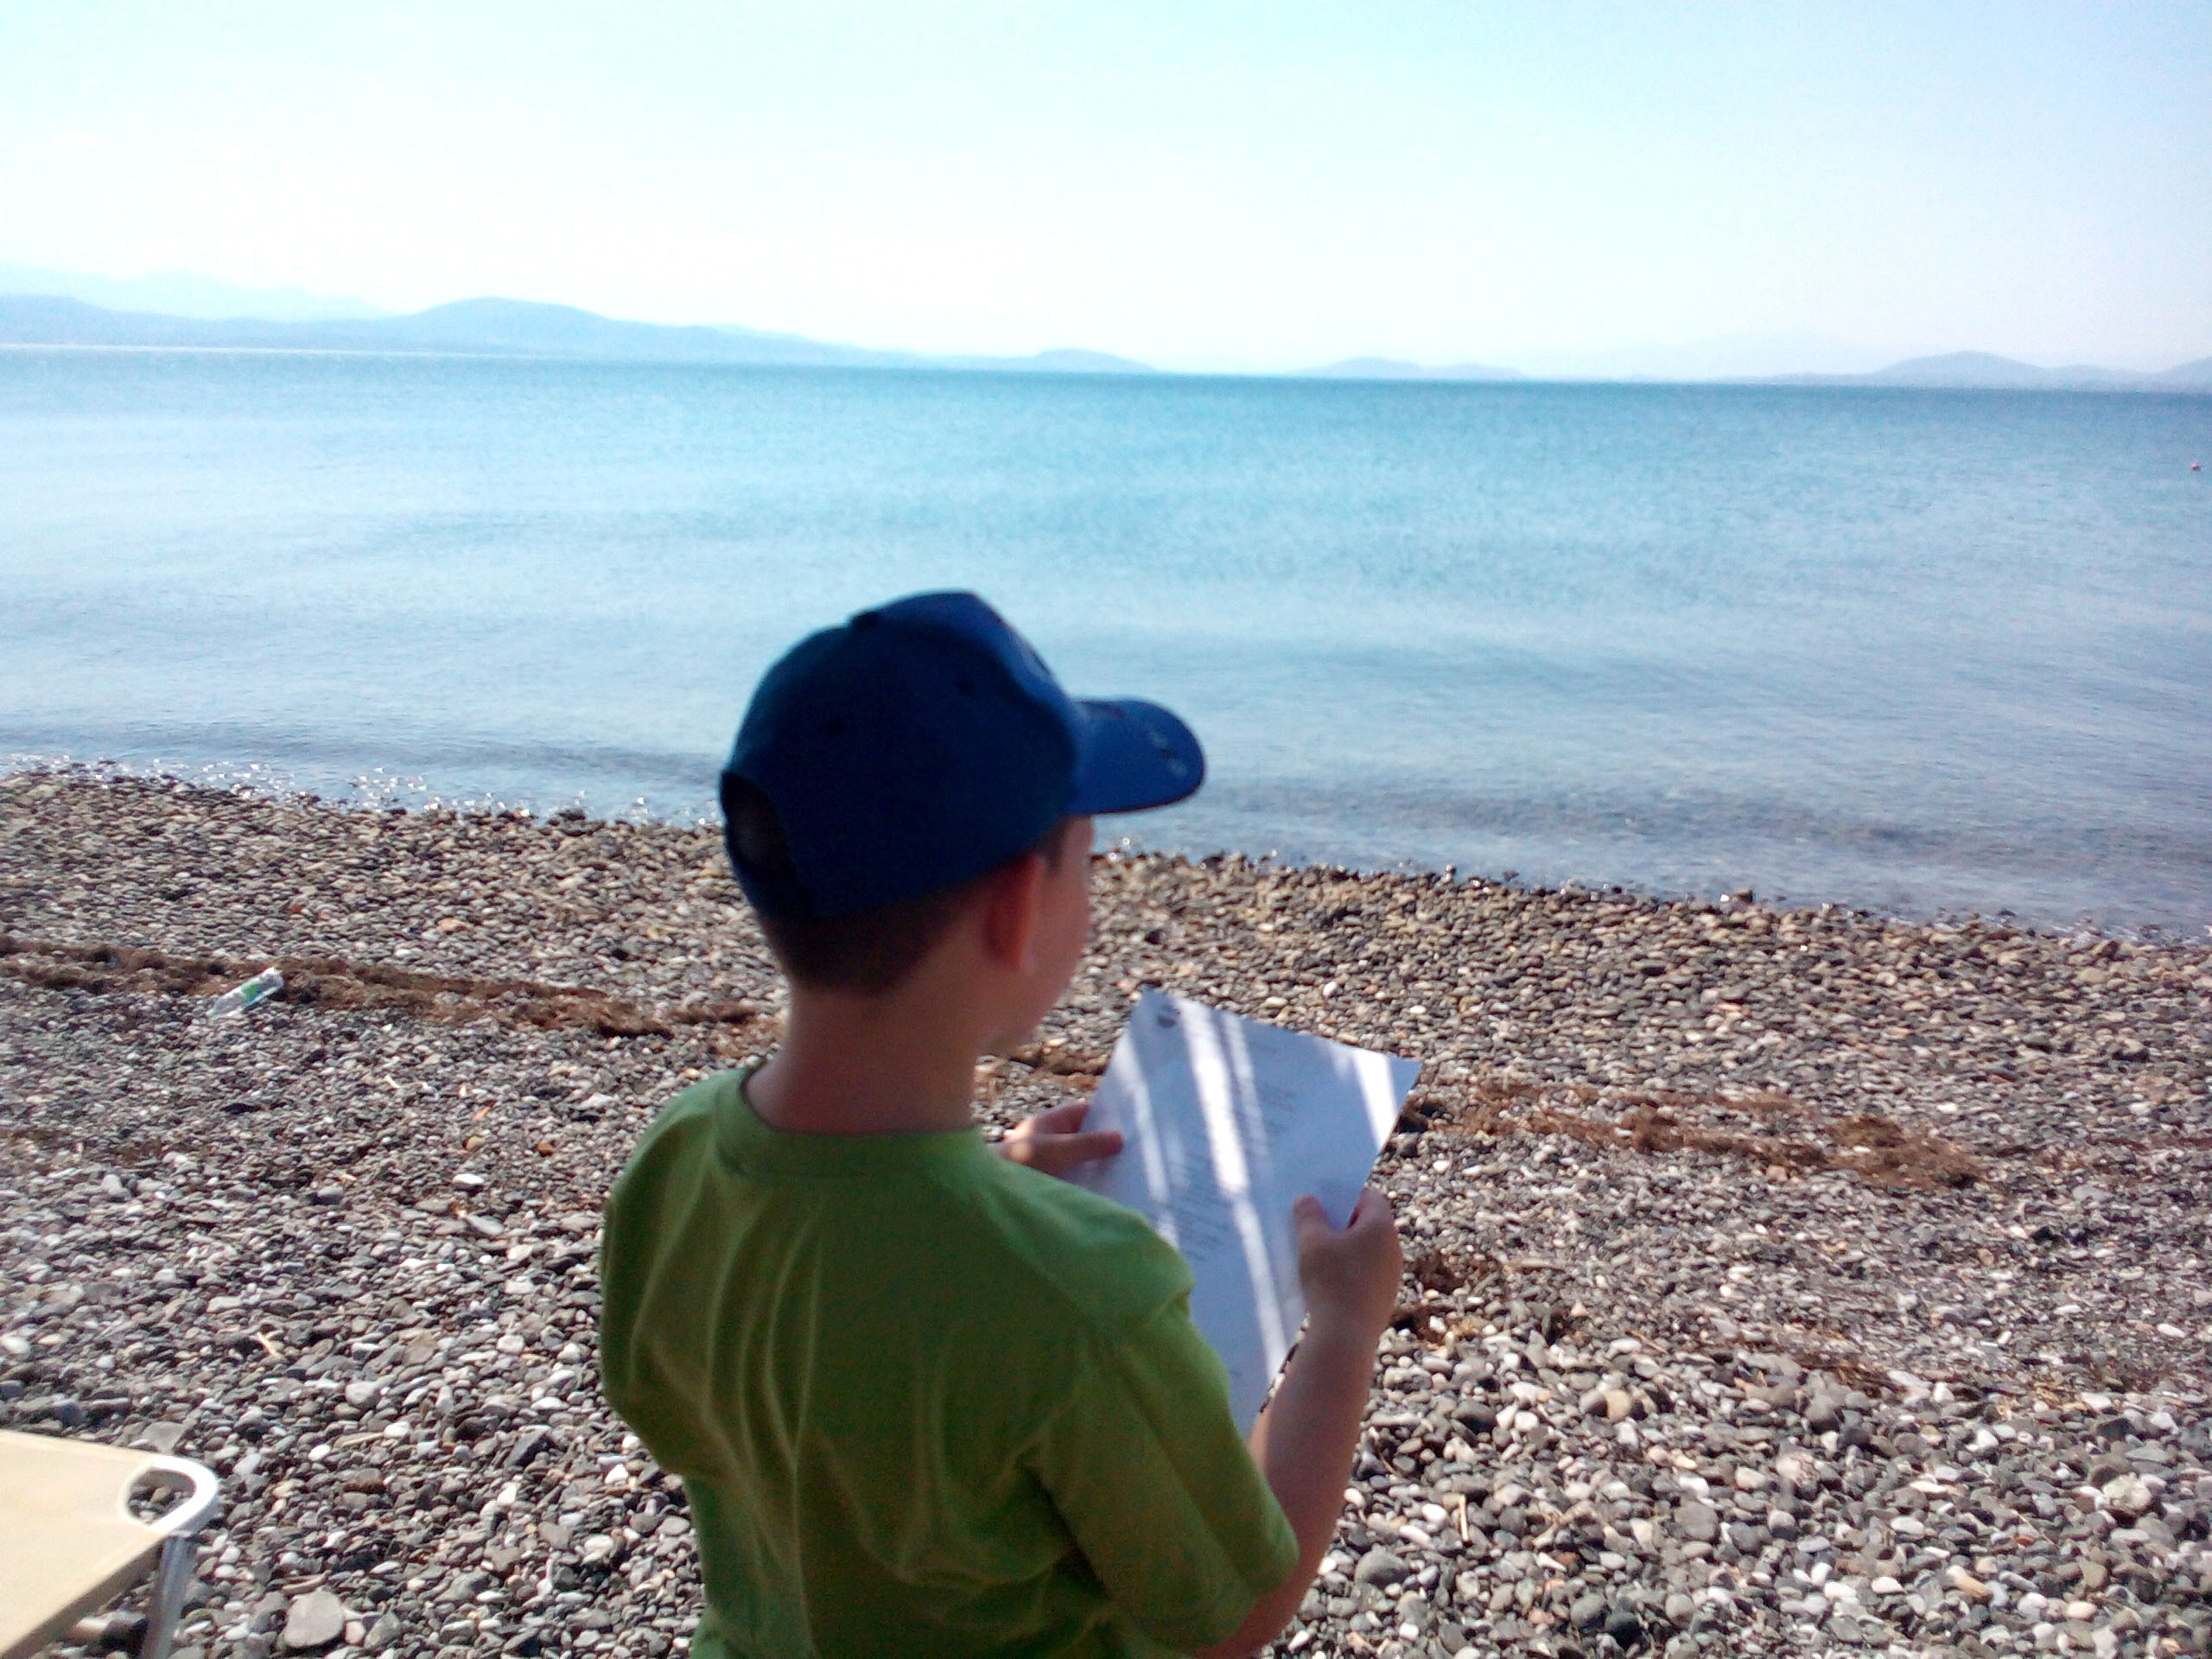 Διαβάζοντας στη θάλασσα, Δημοτική Βιβλιοθήκη Ψαχνών